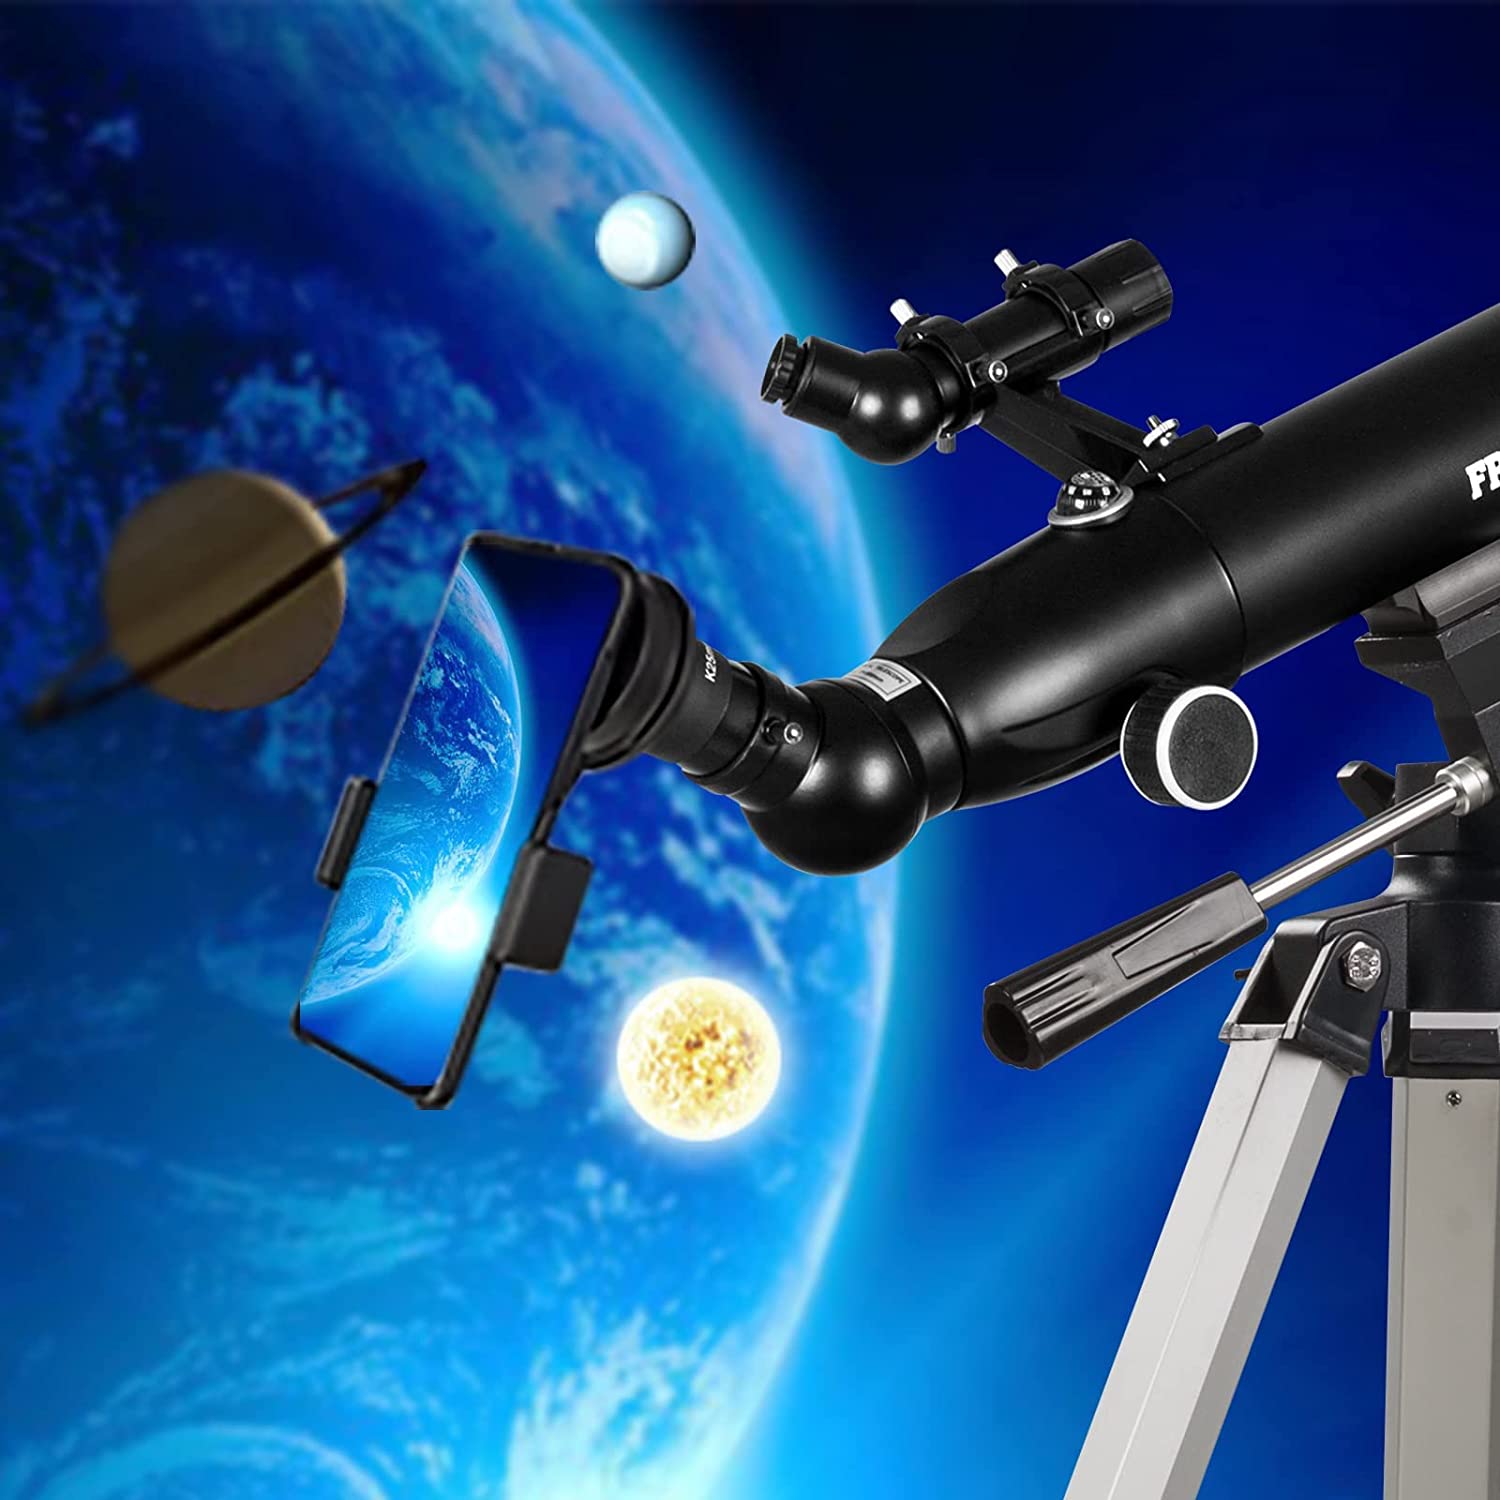  XIXIDIAN 300X 2.756 in Apertura Profesional Telescopio  Astronómico Refractor Trípode Buscador para Principiante/Telescopio para  Astronomía Stargazing Hd Espacio Profundo para Adultos : Electrónica